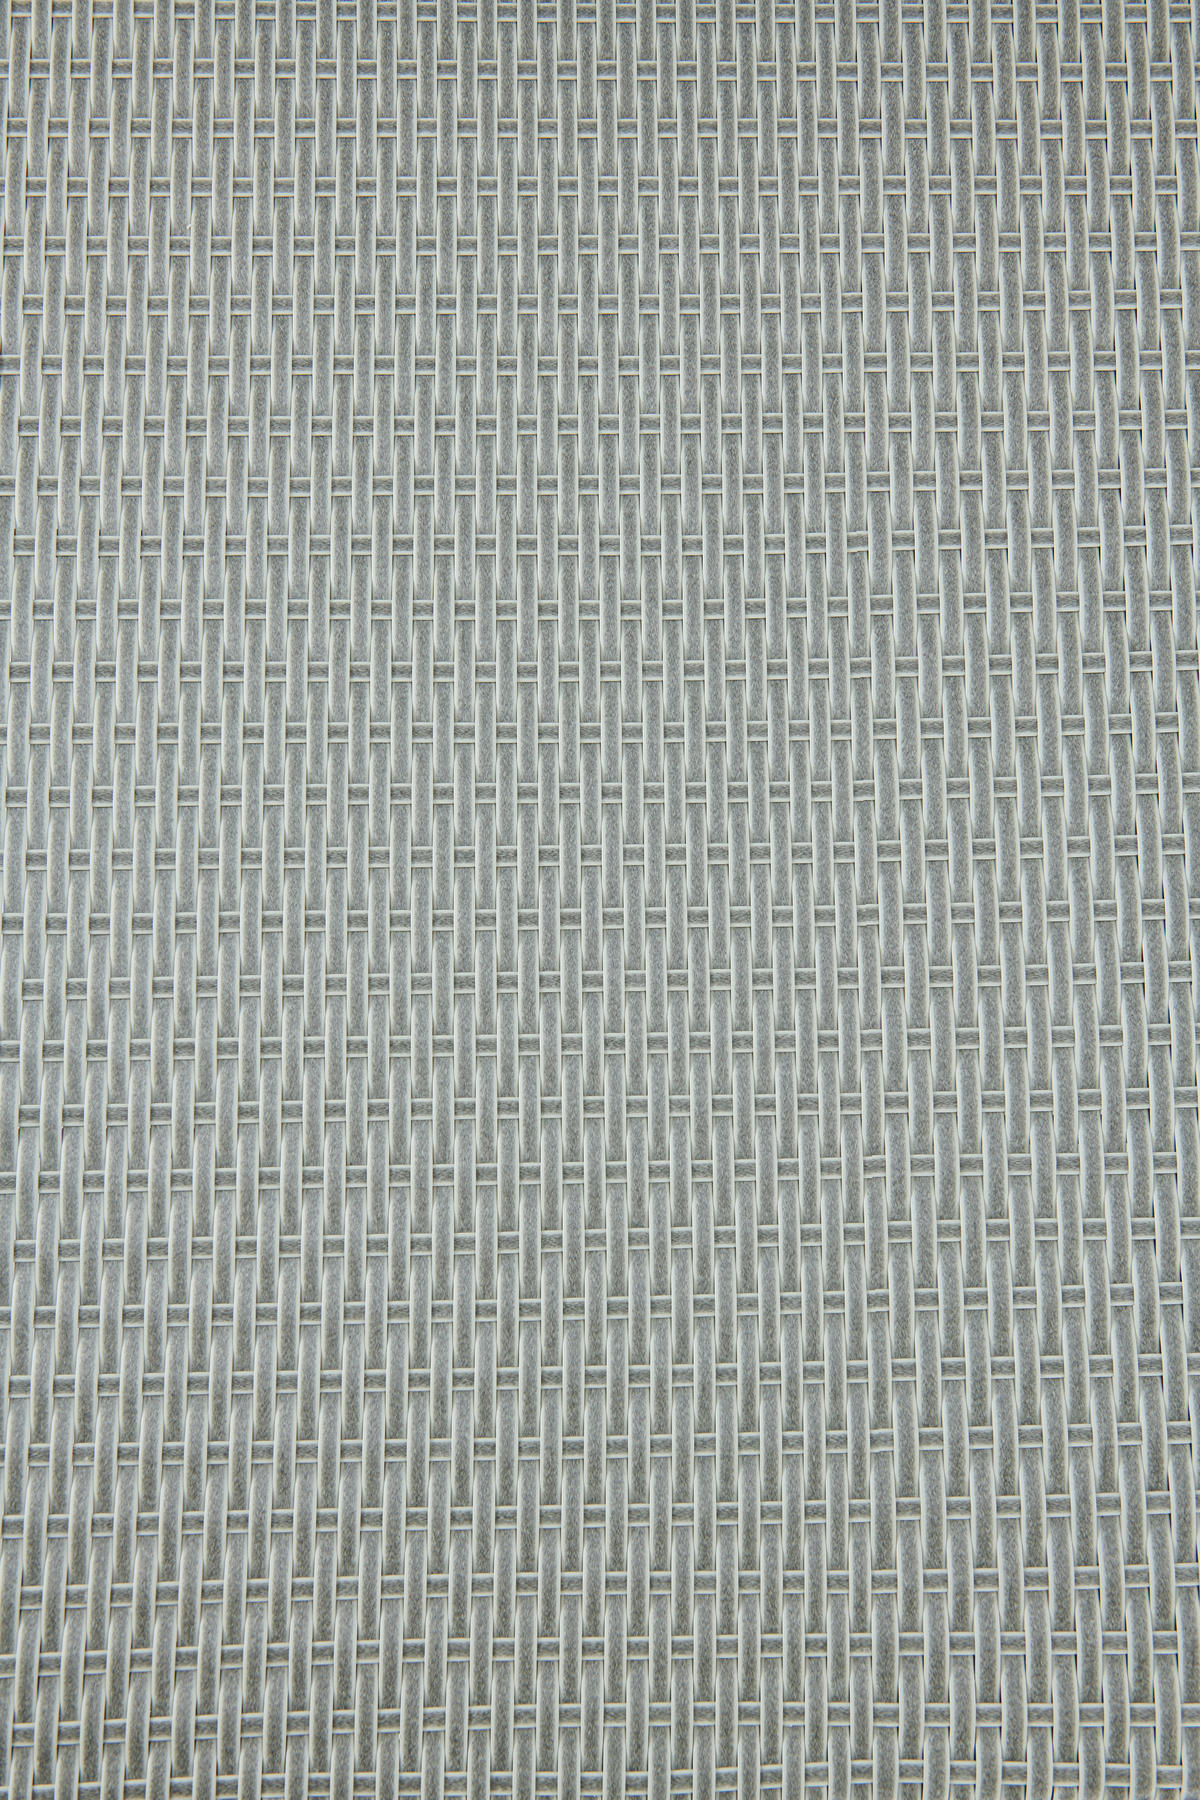 LOUNGEGARNITUR 141/180 cm Stahl  - Grau, MODERN, Kunststoff/Textil (141/180cm) - Ambia Garden